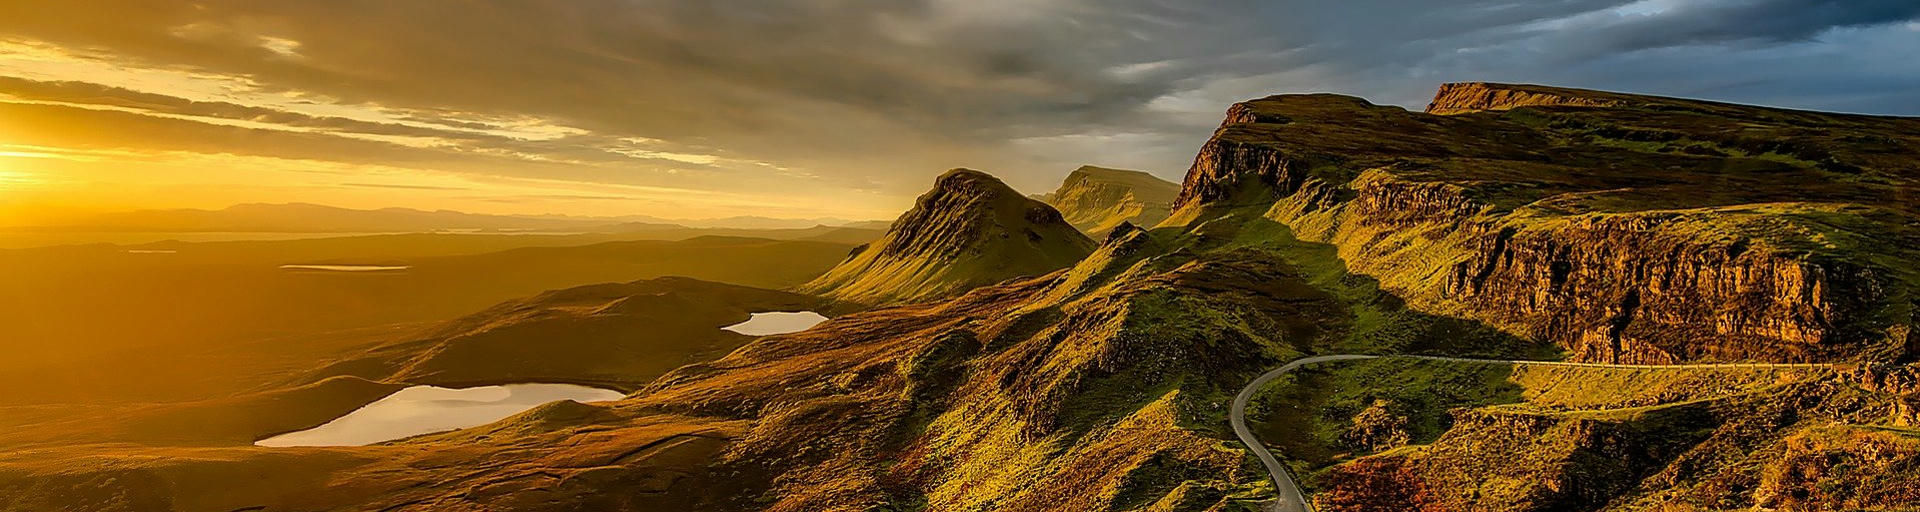 Die Schönsten Reiserouten für Schottland 